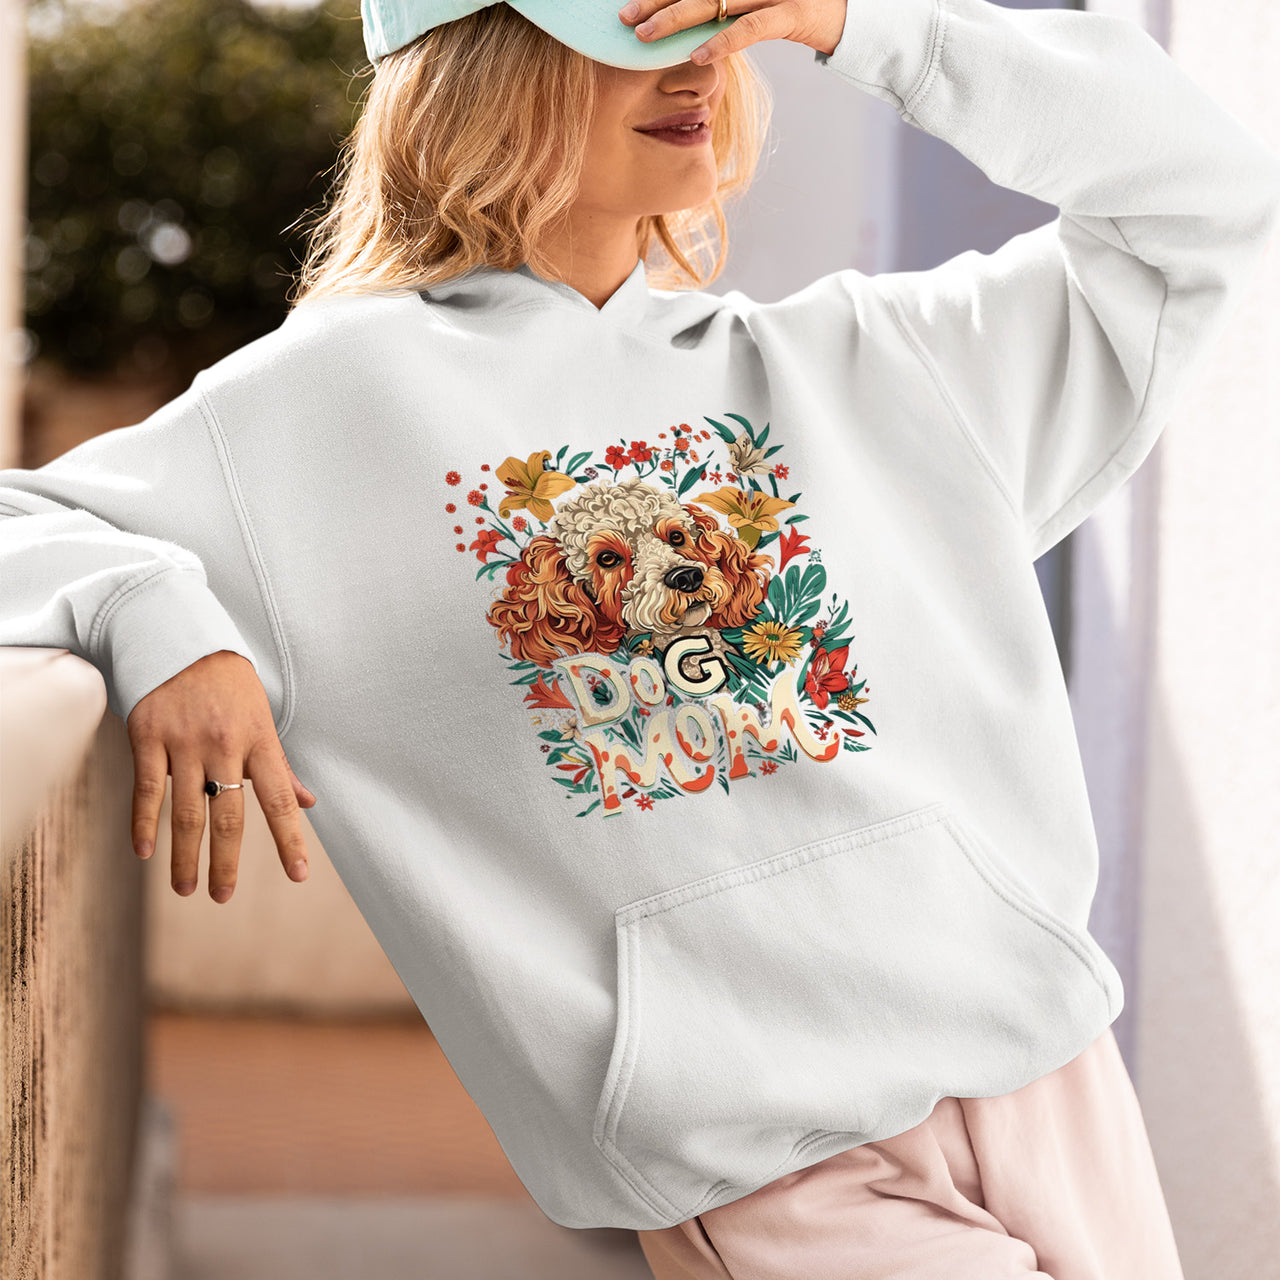 Poodle Dog T-shirt, Pet Lover Shirt, Dog Lover Shirt, Dog Mom T-Shirt, Dog Owner Shirt, Gift For Dog Mom, Funny Dog Shirts, Women Dog T-Shirt, Mother's Day Gift, Dog Lover Wife Gifts, Dog Shirt